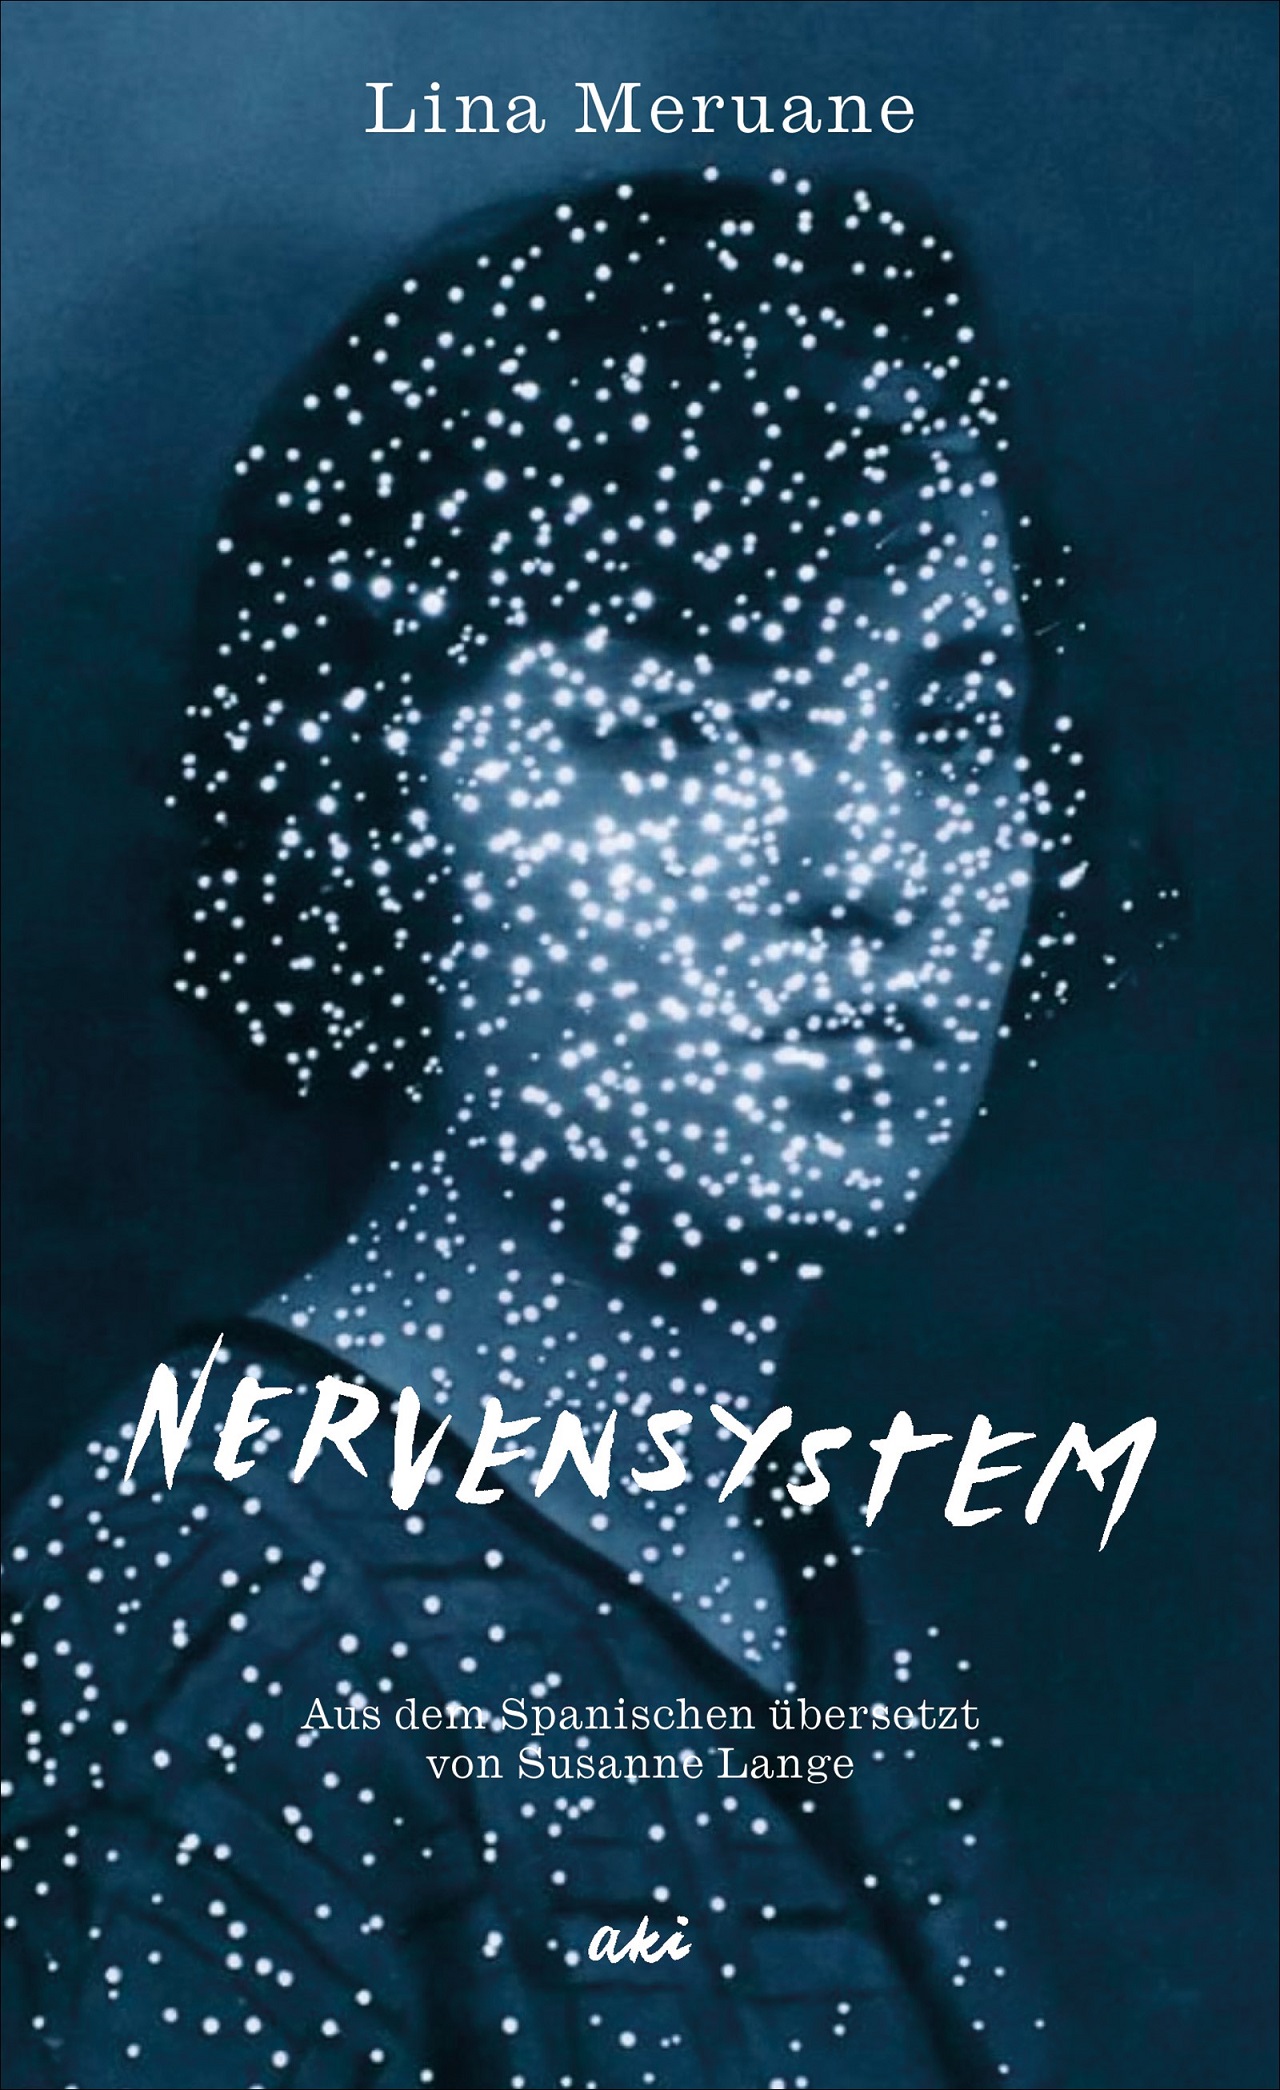 Lina Meruane "Nervensystem"